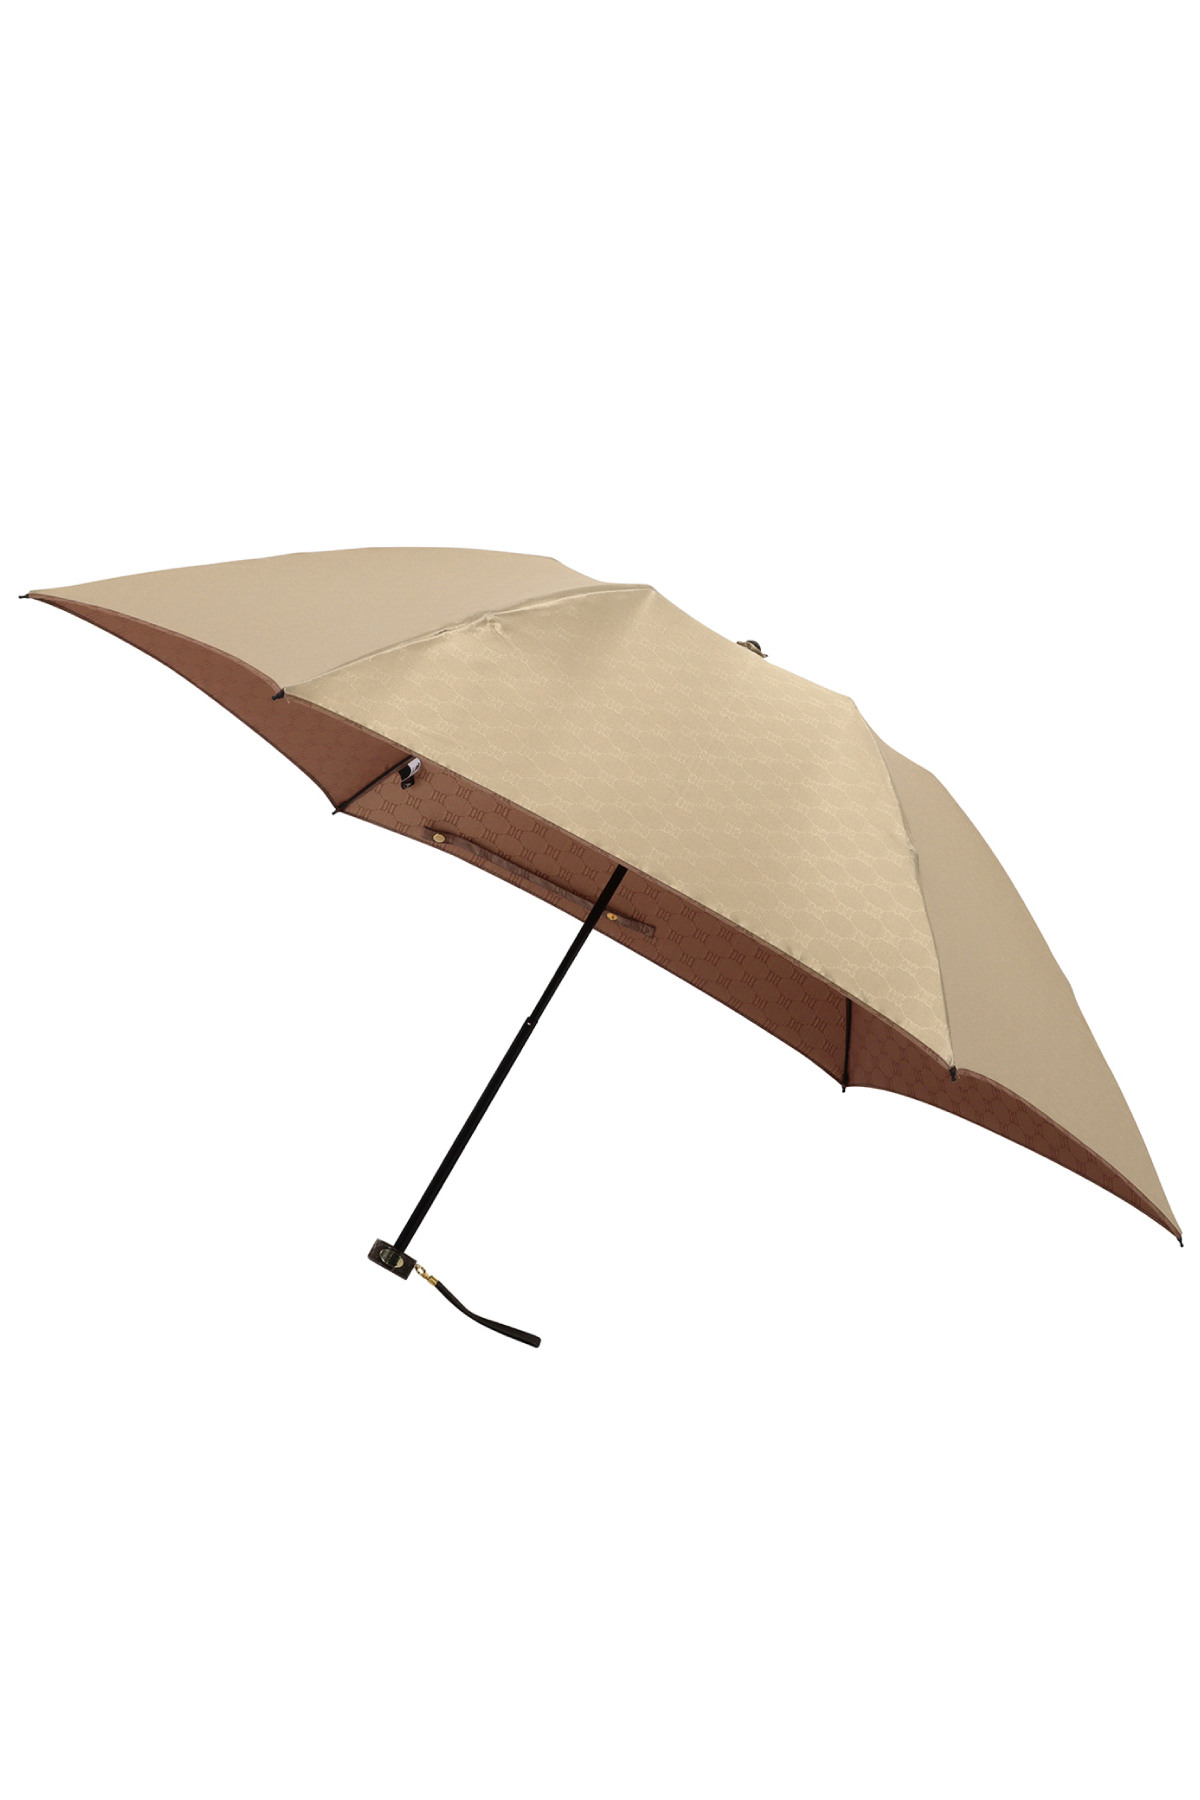 【雨傘】ミニ折りたたみ傘両面カチオン裏ロゴ 詳細画像 1